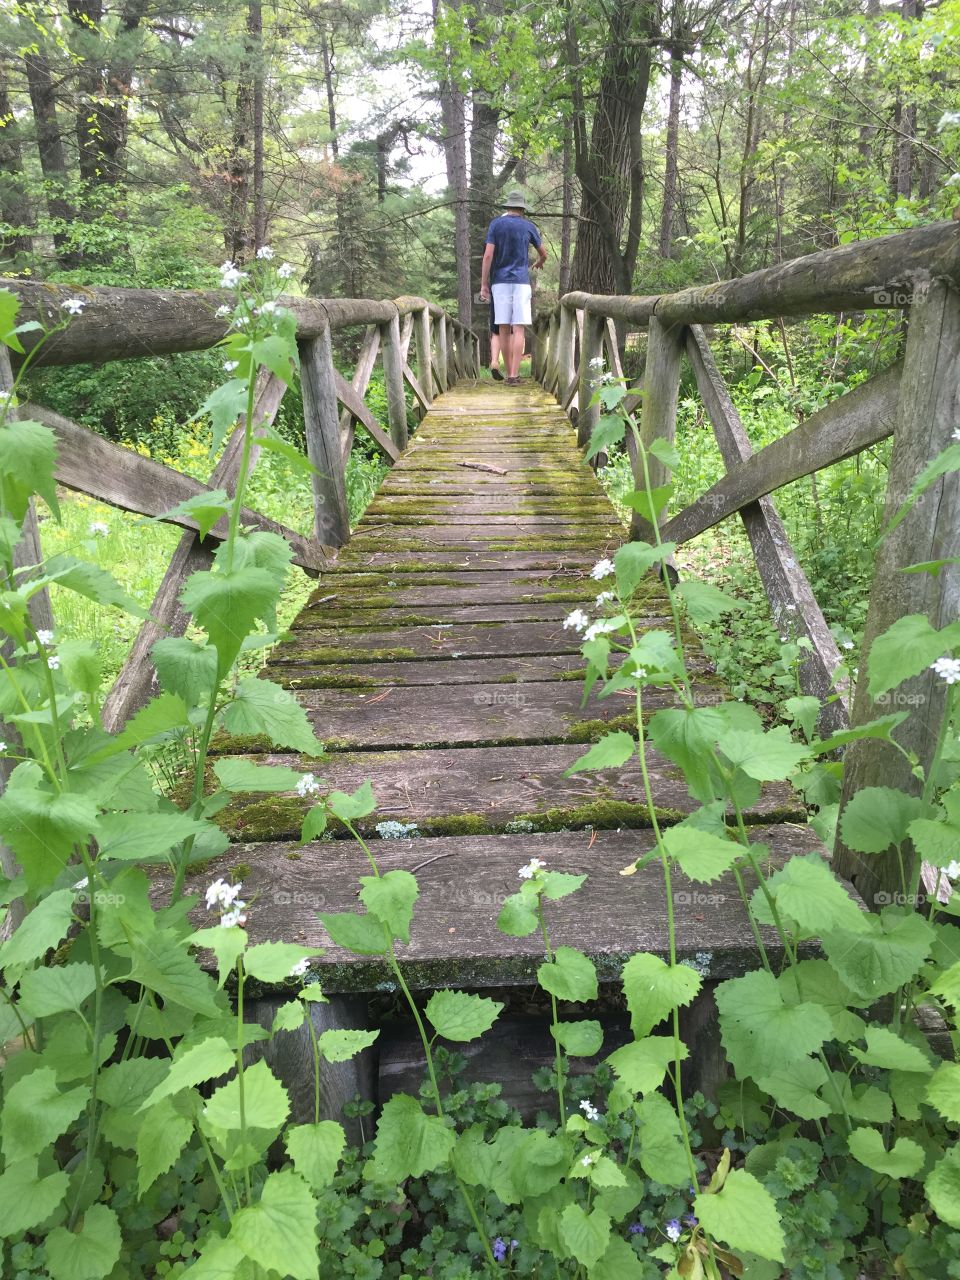 Bridge in nature